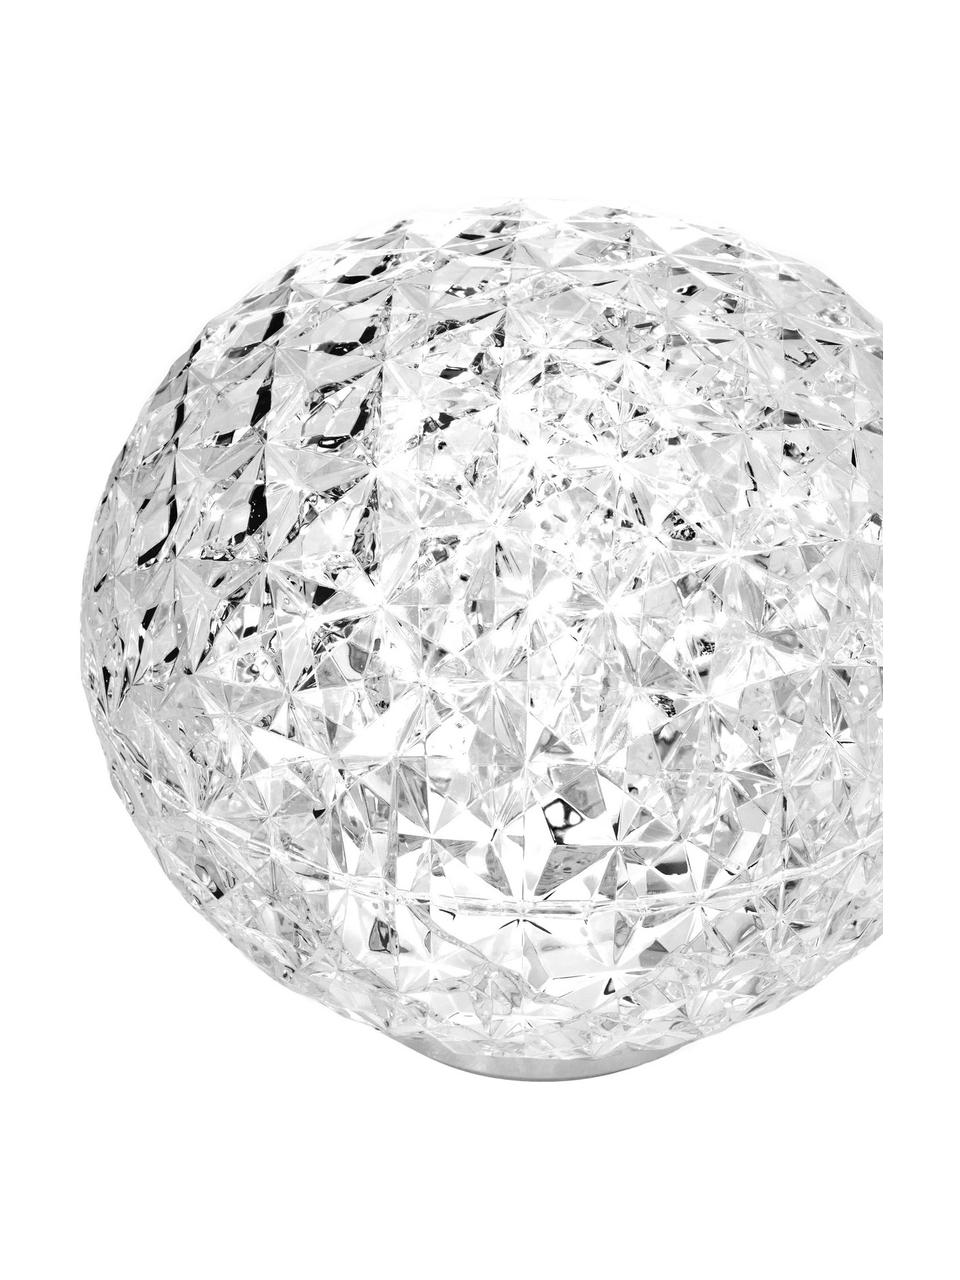 Mobile Dimmbare LED-Tischlampe Planet mit Touchfunktion, Lampenschirm: Durchfärbtes, transparent, Lampenfuß: Thermoplastisches Technop, Transparent, Ø 16 x H 14 cm